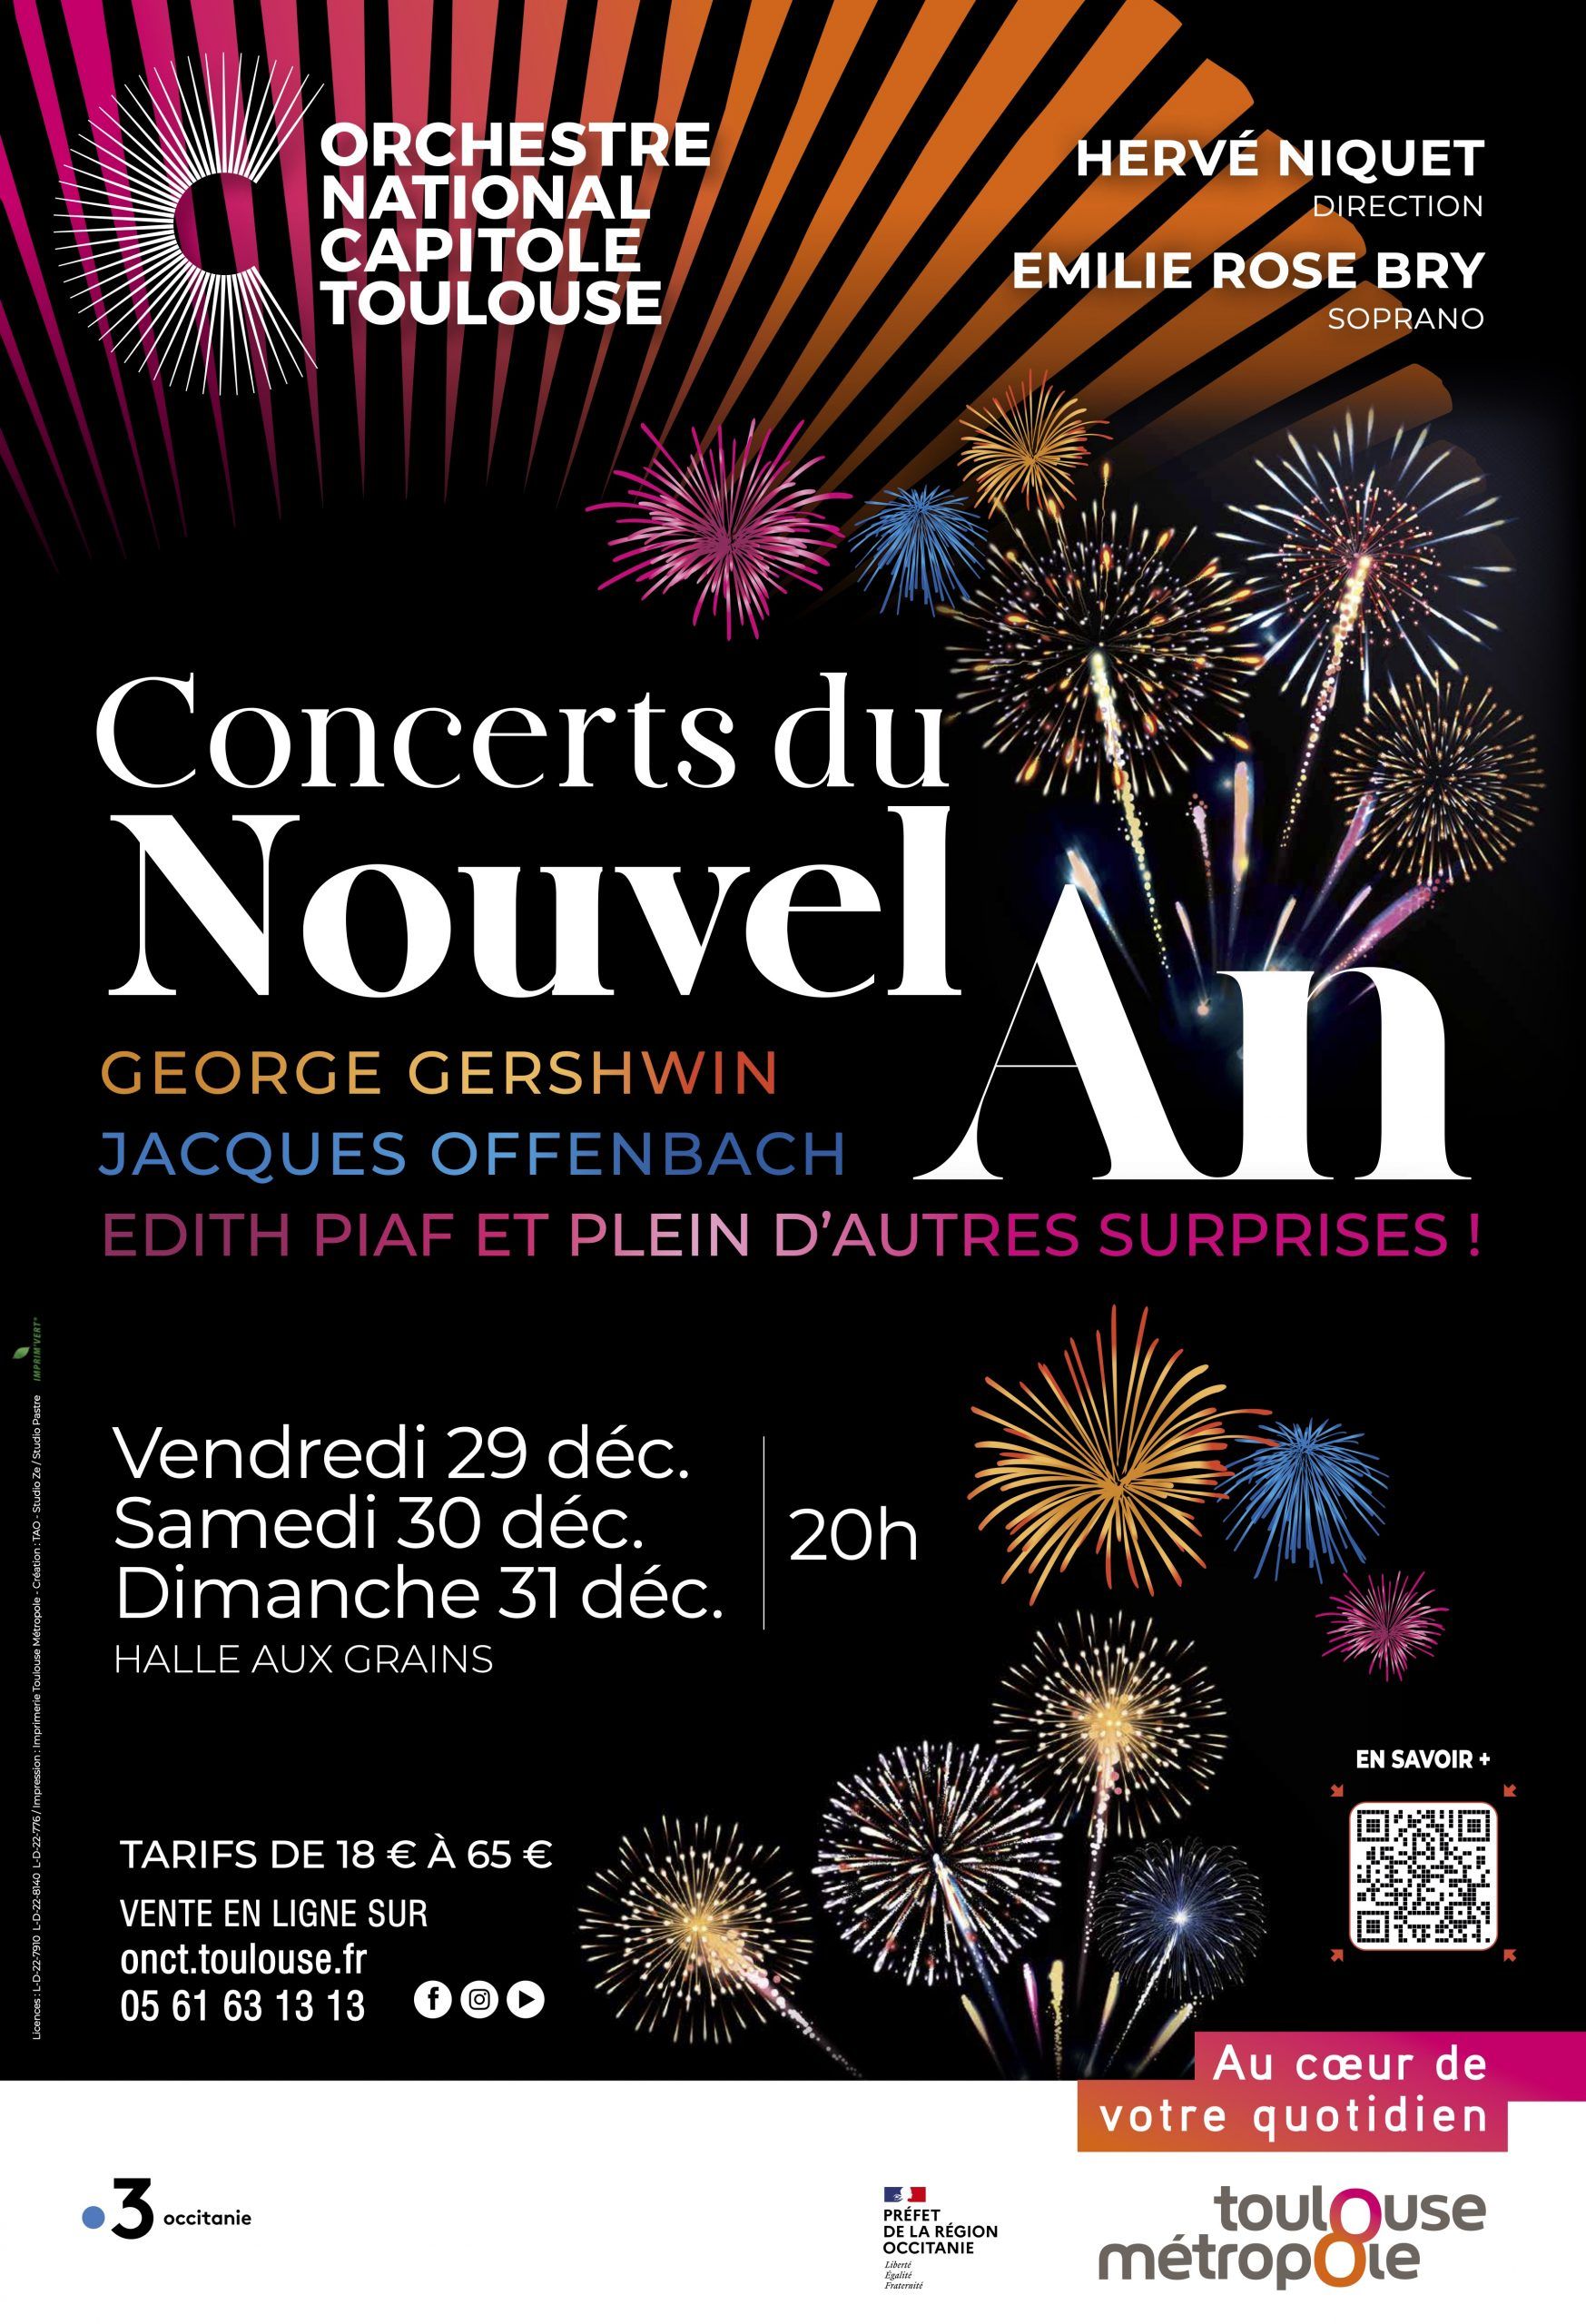 Orchestre national du Capitole - Concerts du nouvel an